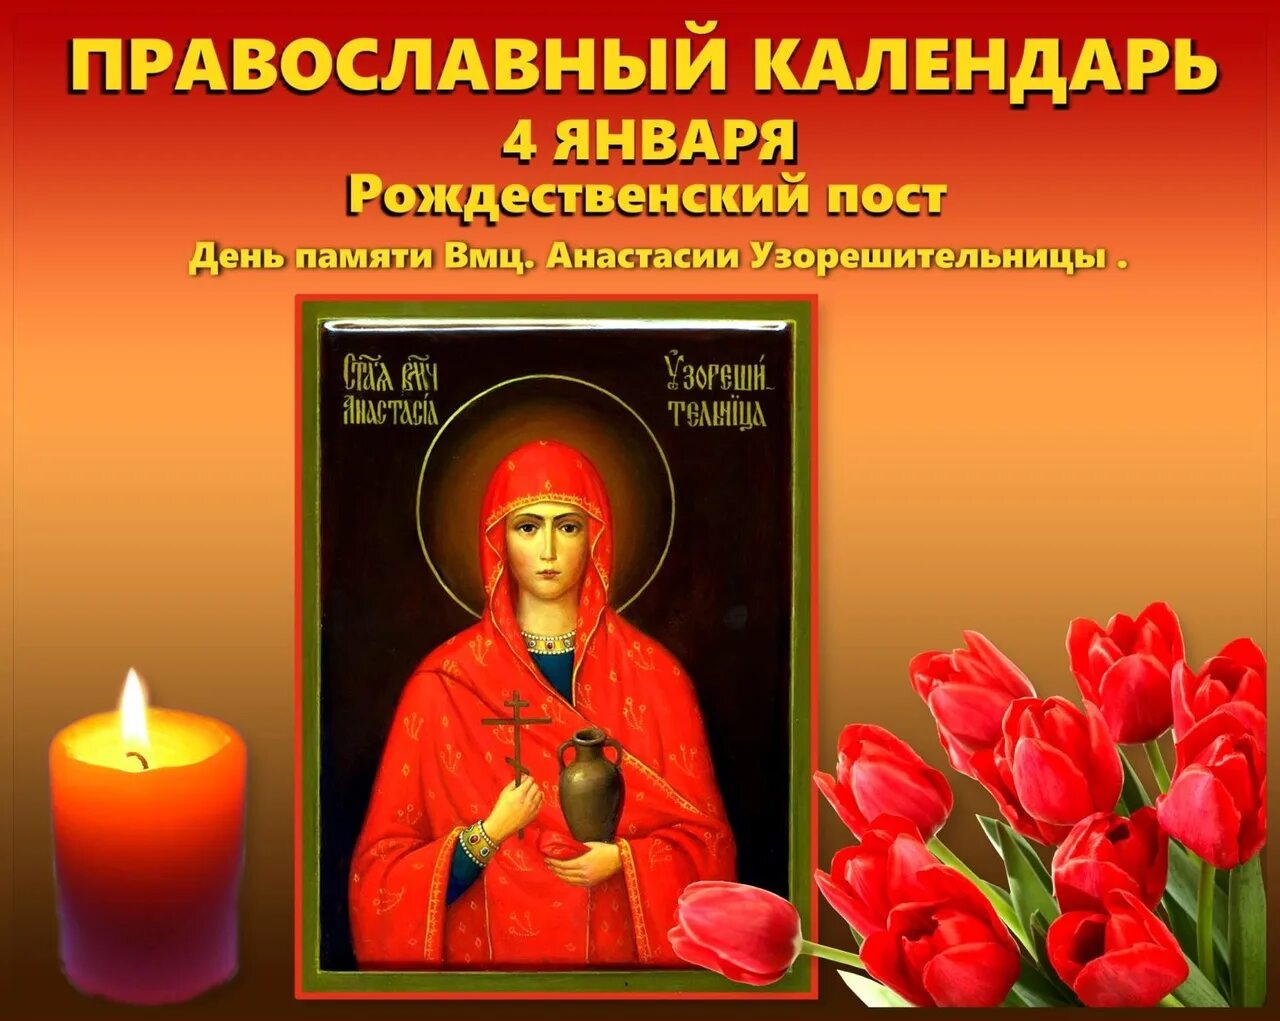 3 апреля православный календарь. Православный календарь.